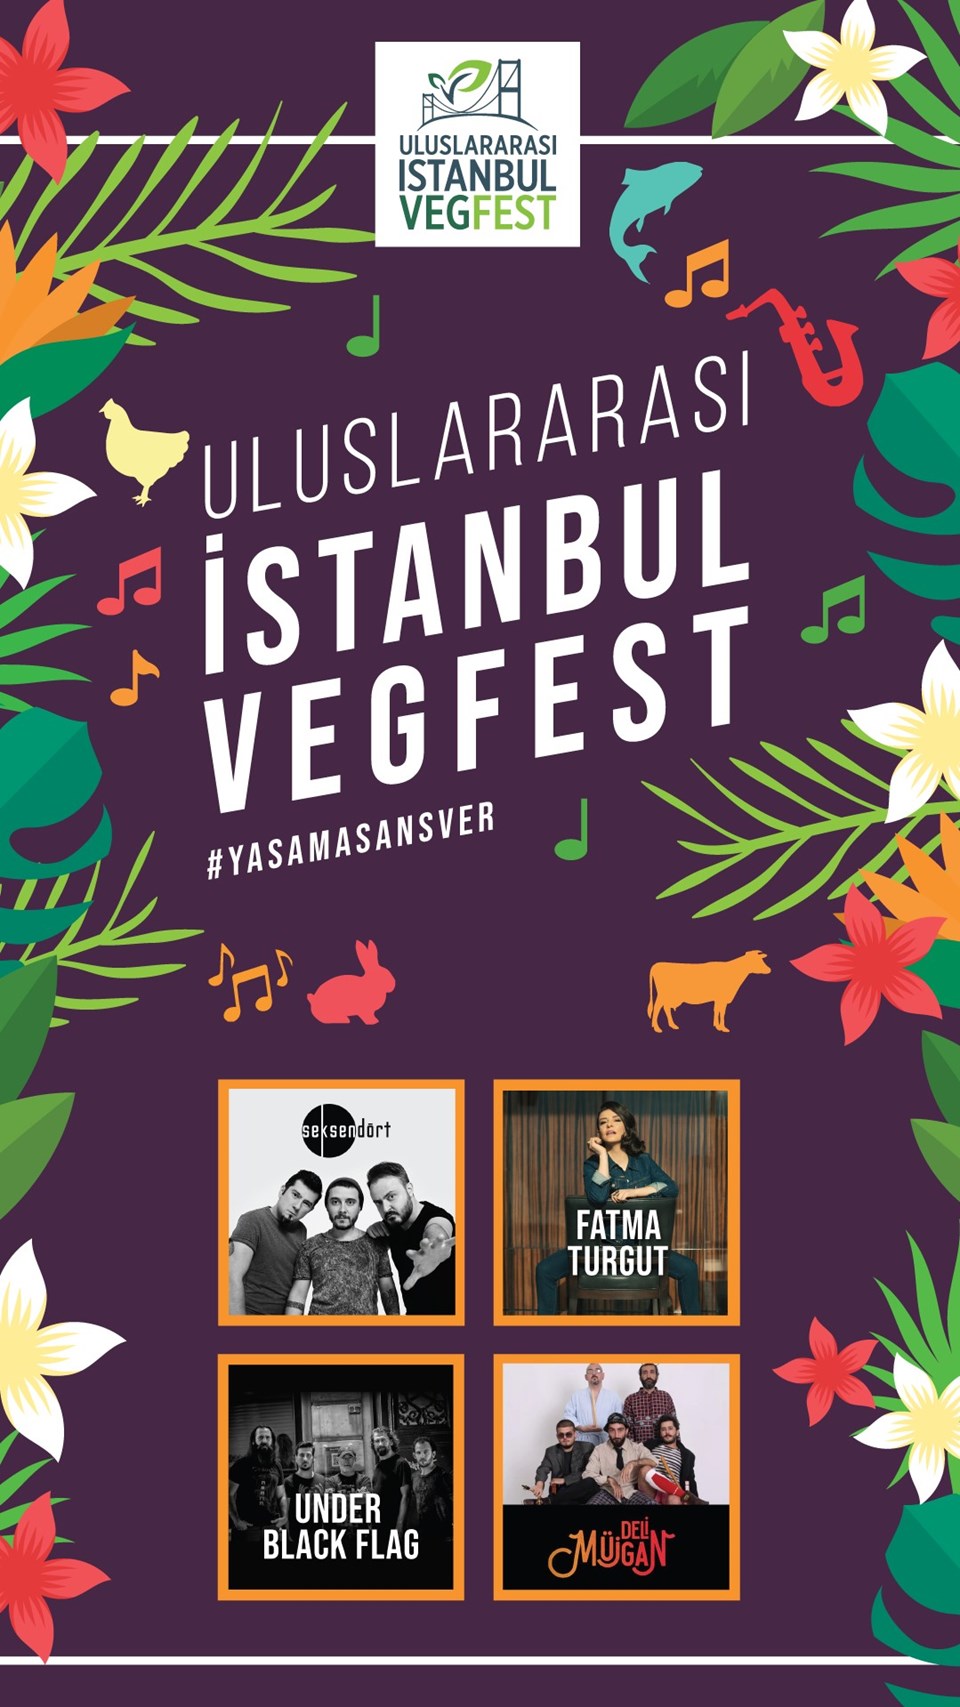 Uluslararası İstanbul Vegan Festivali (Vegfest 8 Eylül'de başlıyor) - 1